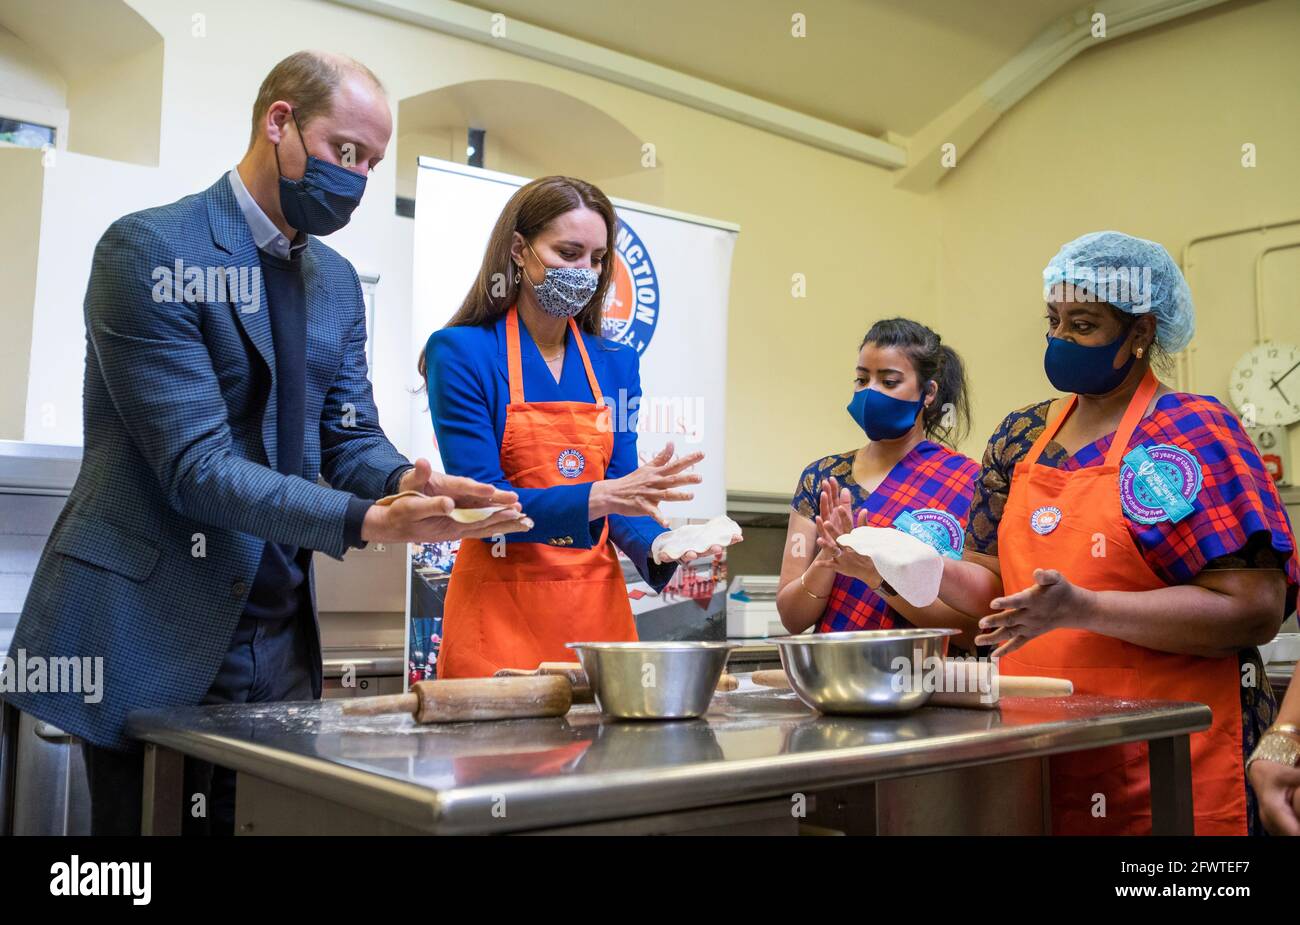 Der Herzog und die Herzogin von Cambridge helfen mit Vertretern von Sikh Sanjog, einer Sikh-Community-Gruppe, die an gefährdete Familien in Edinburgh verteilt wird, in der Café-Küche im Palace of Holyroodhouse, Edinburgh, bei der Zubereitung von Mahlzeiten. Bilddatum: Montag, 24. Mai 2021. Stockfoto